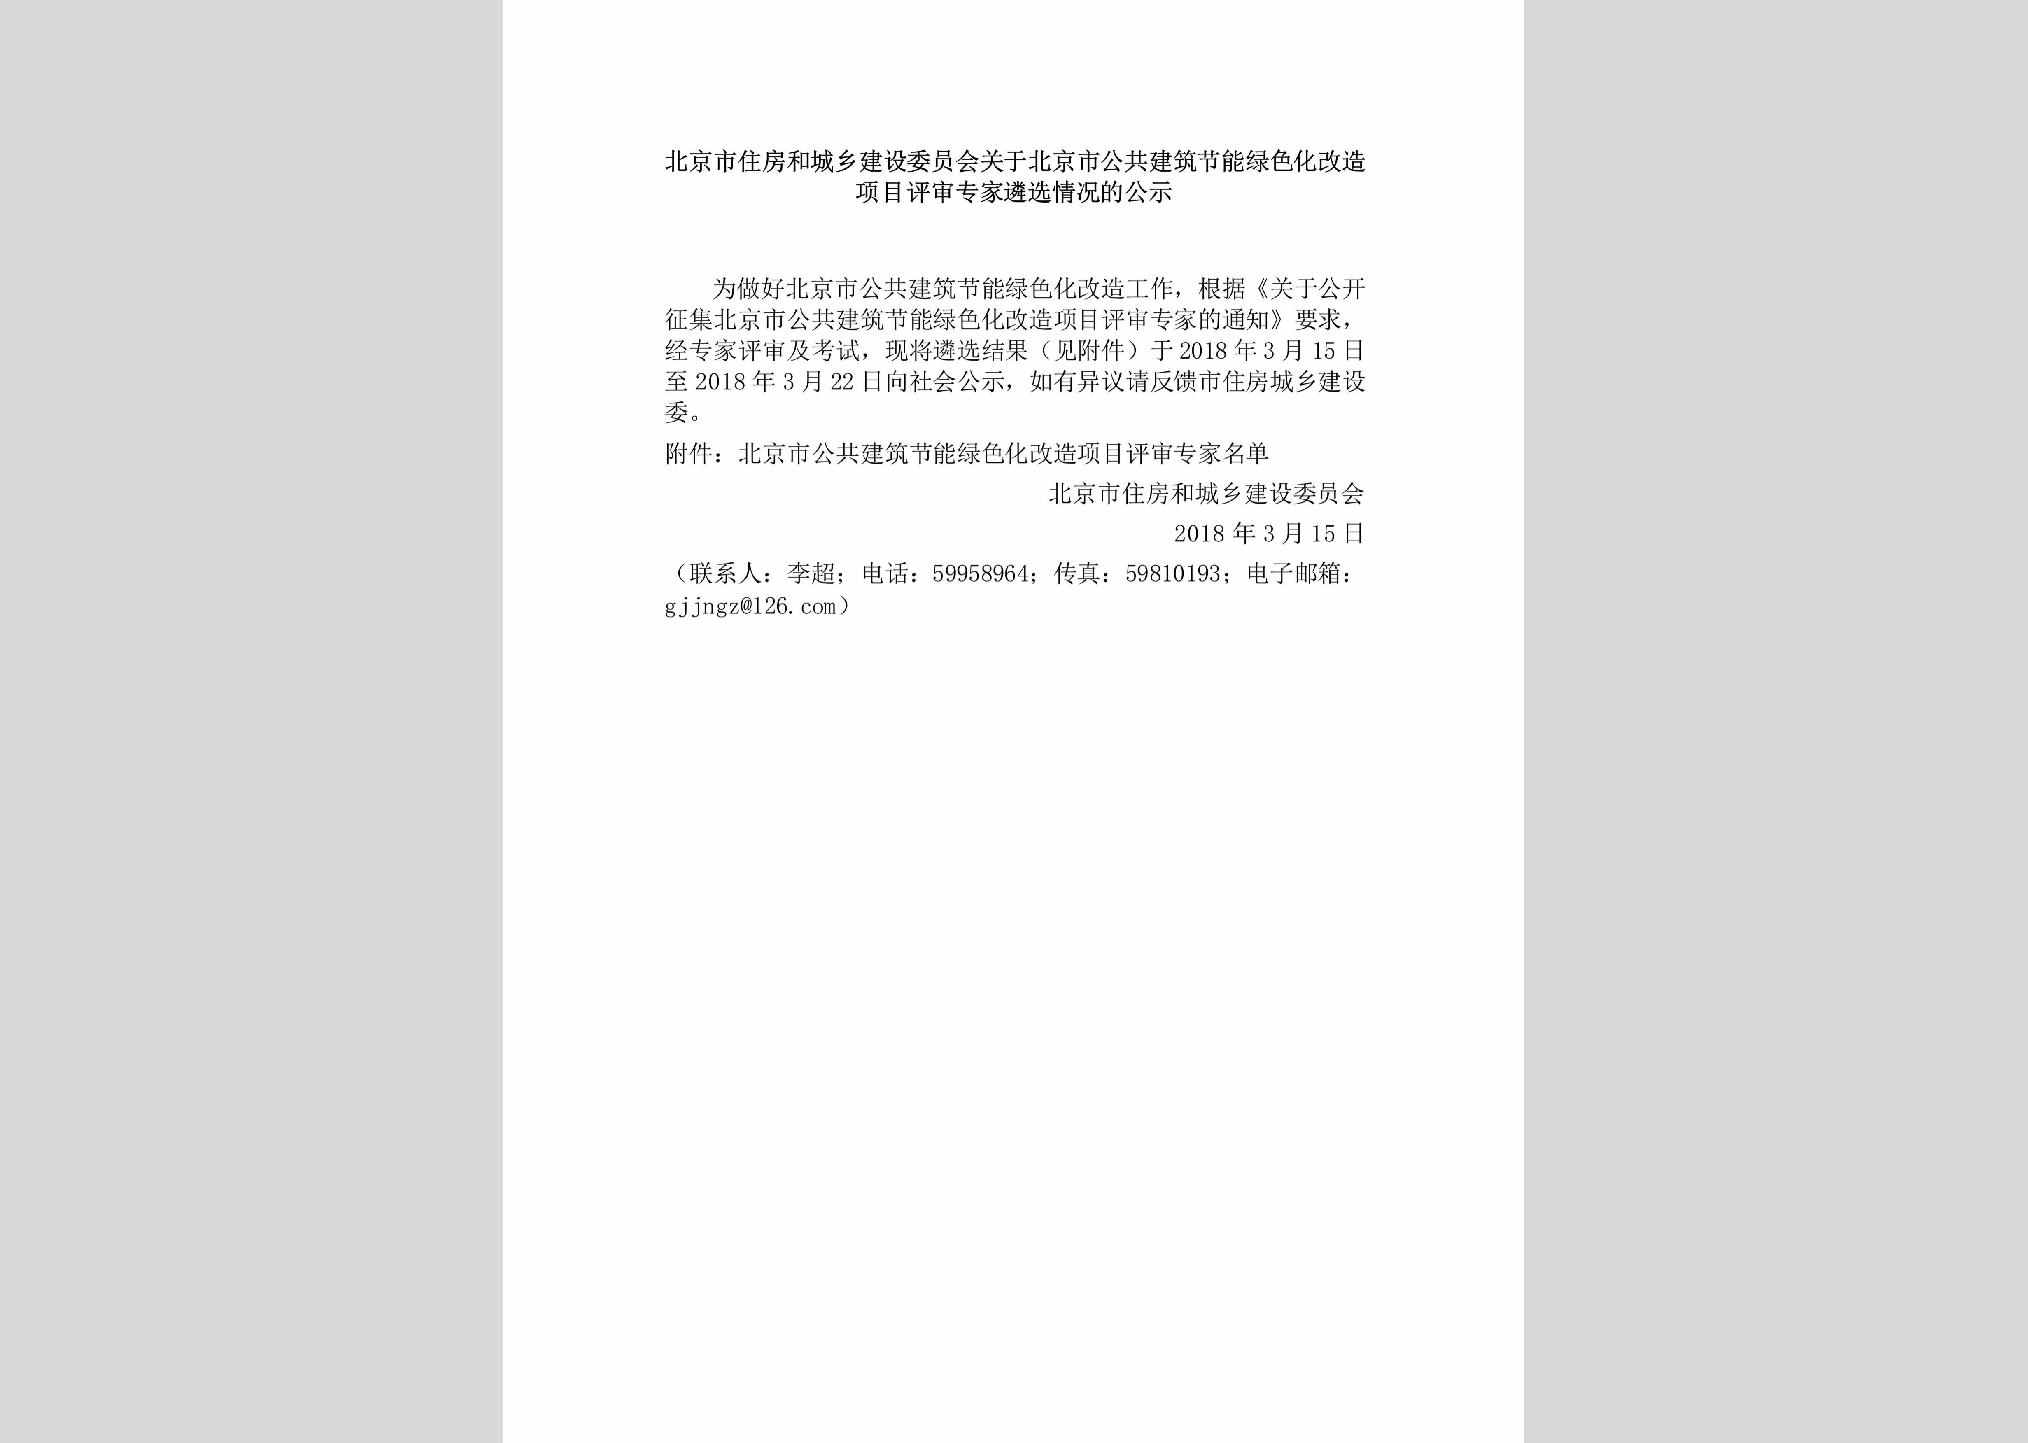 BJ-JZJNLSGZ-2018：北京市住房和城乡建设委员会关于北京市公共建筑节能绿色化改造项目评审专家遴选情况的公示